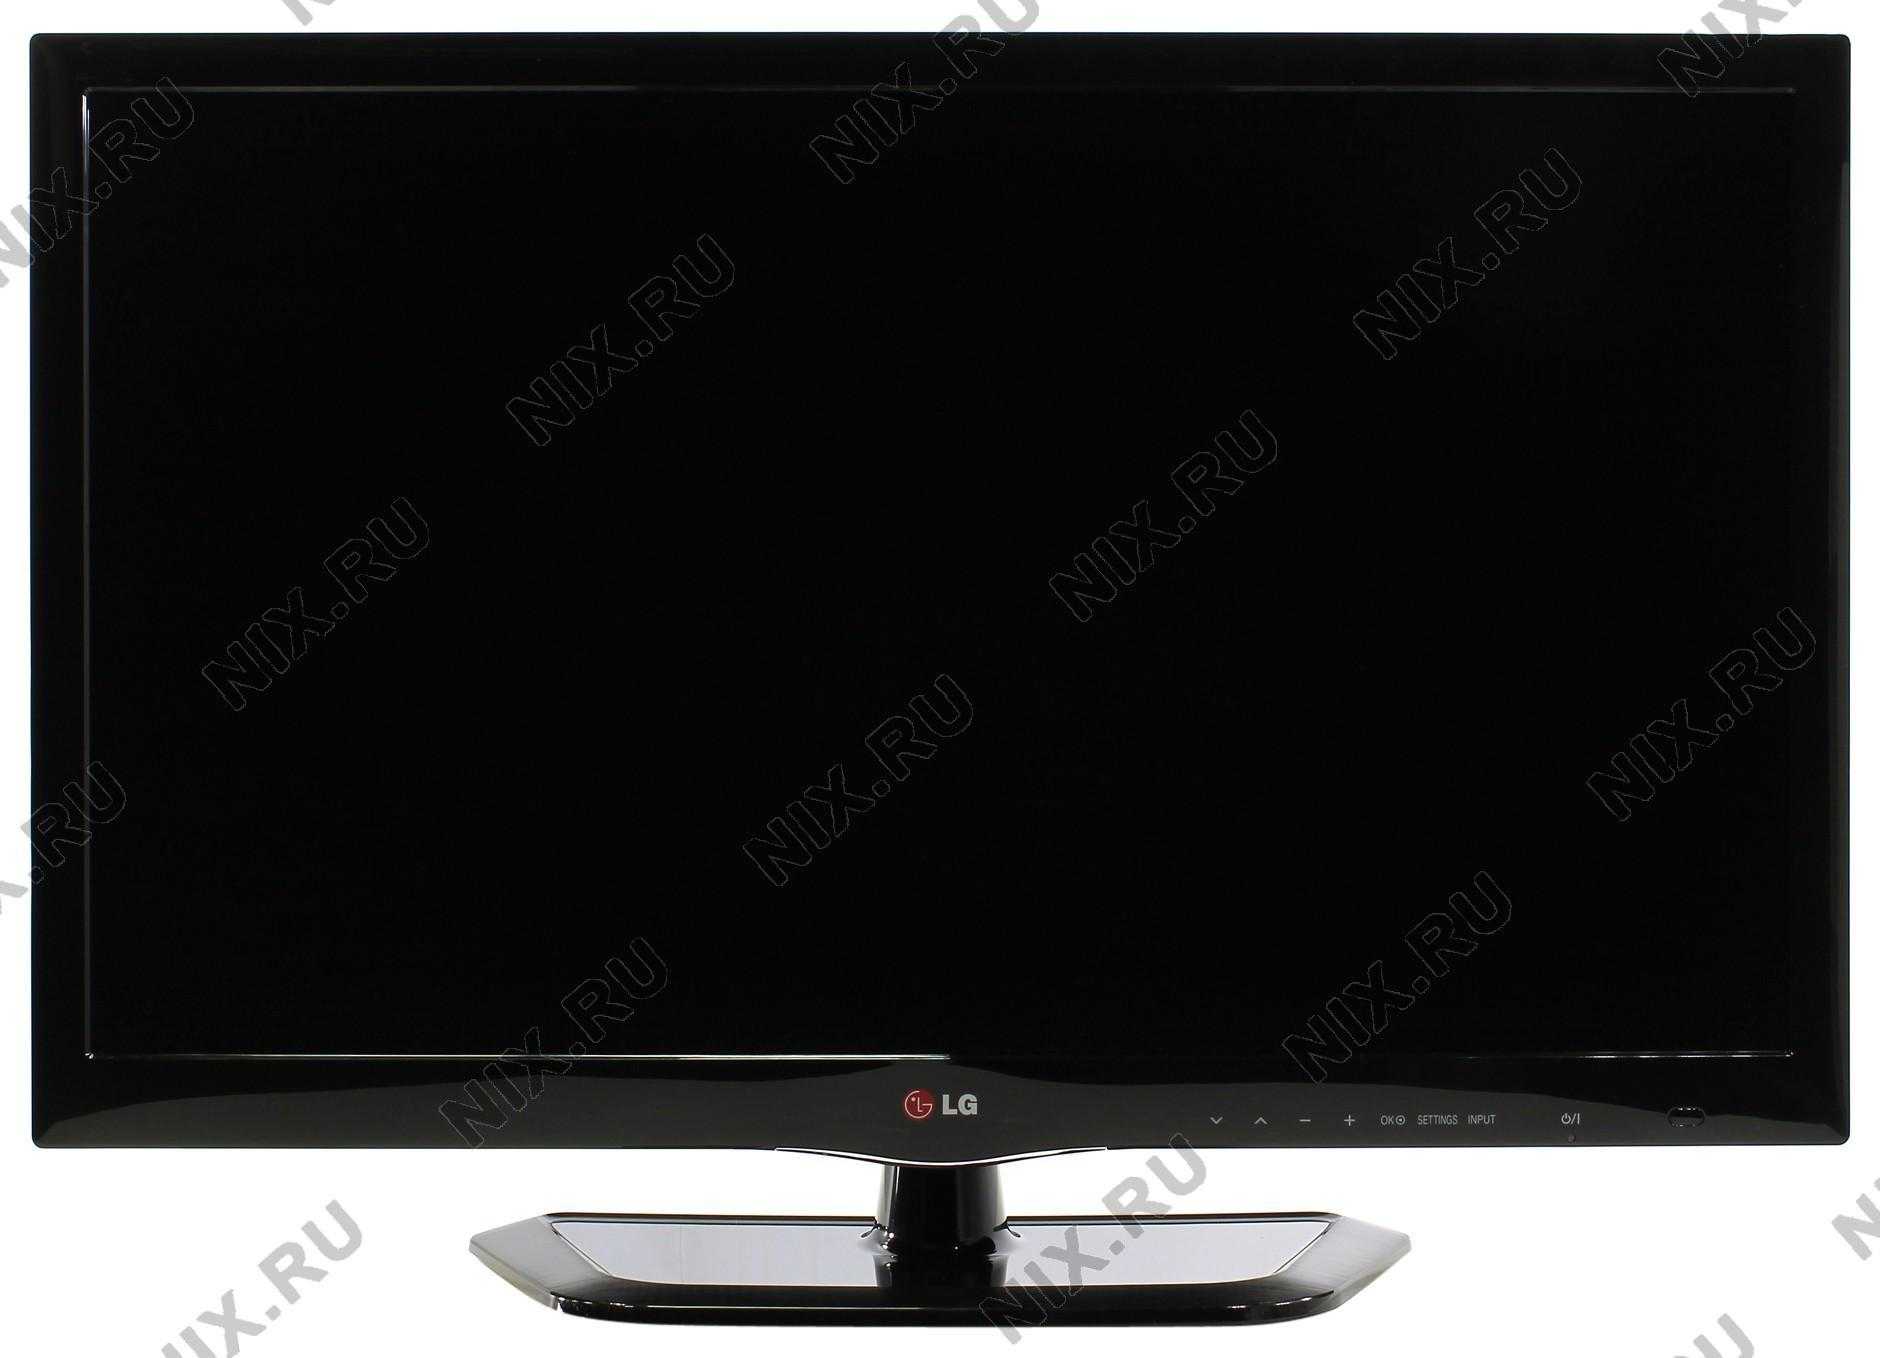 Lg 29ln450u - купить , скидки, цена, отзывы, обзор, характеристики - телевизоры